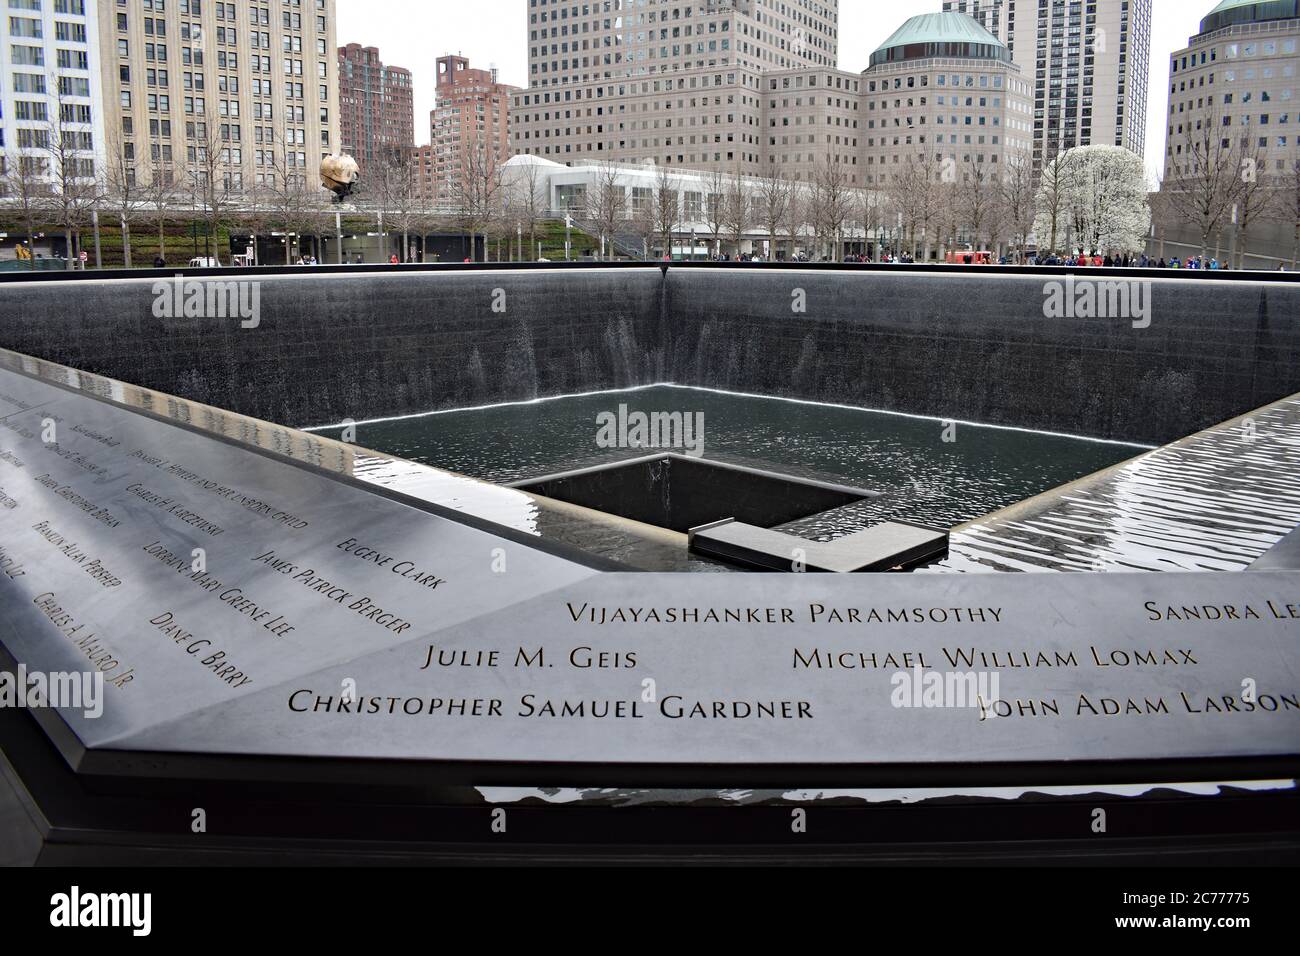 La piscina sur del monumento conmemorativo de 9/11 en el centro de comercio mundial. El agua corre por los bordes y desaparece en un agujero central. Foto de stock